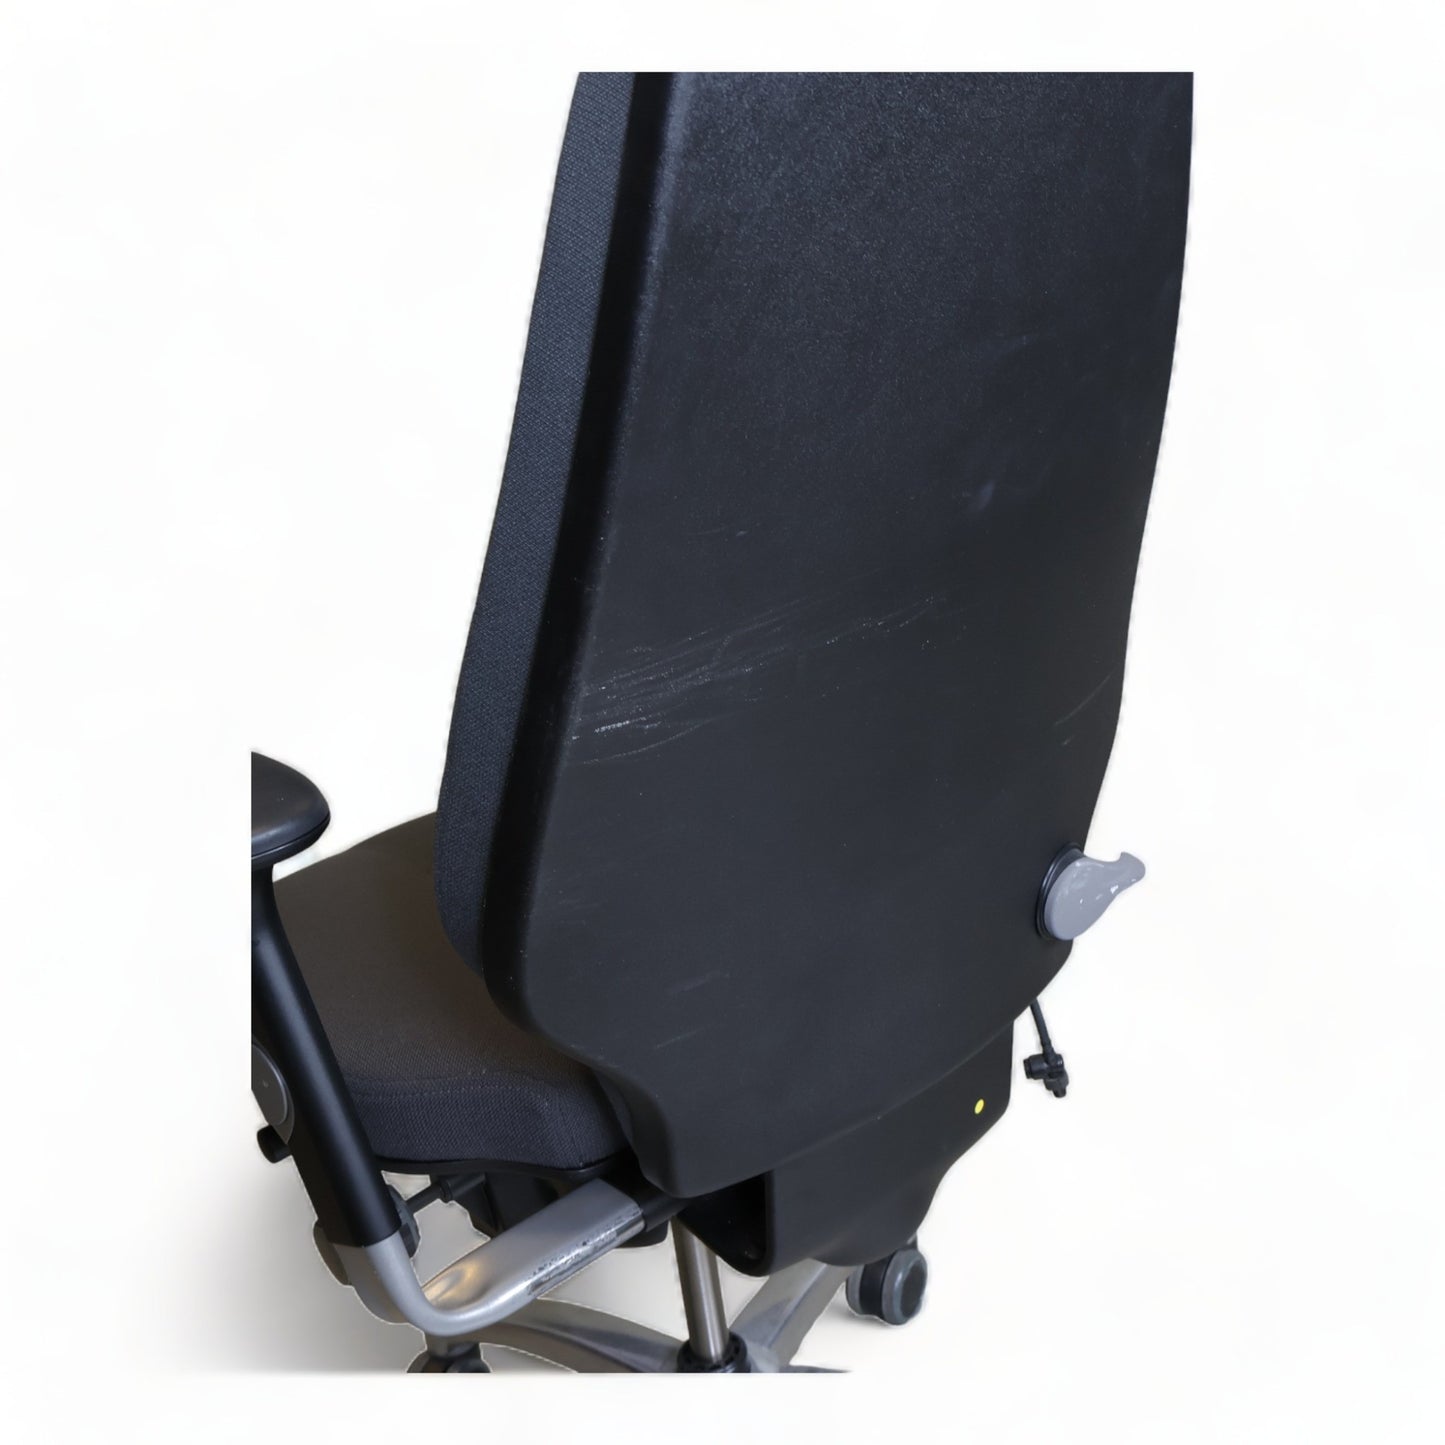 Nyrenset | RH Logic 400 kontorstol med nakkestøtte og justerbare armlener